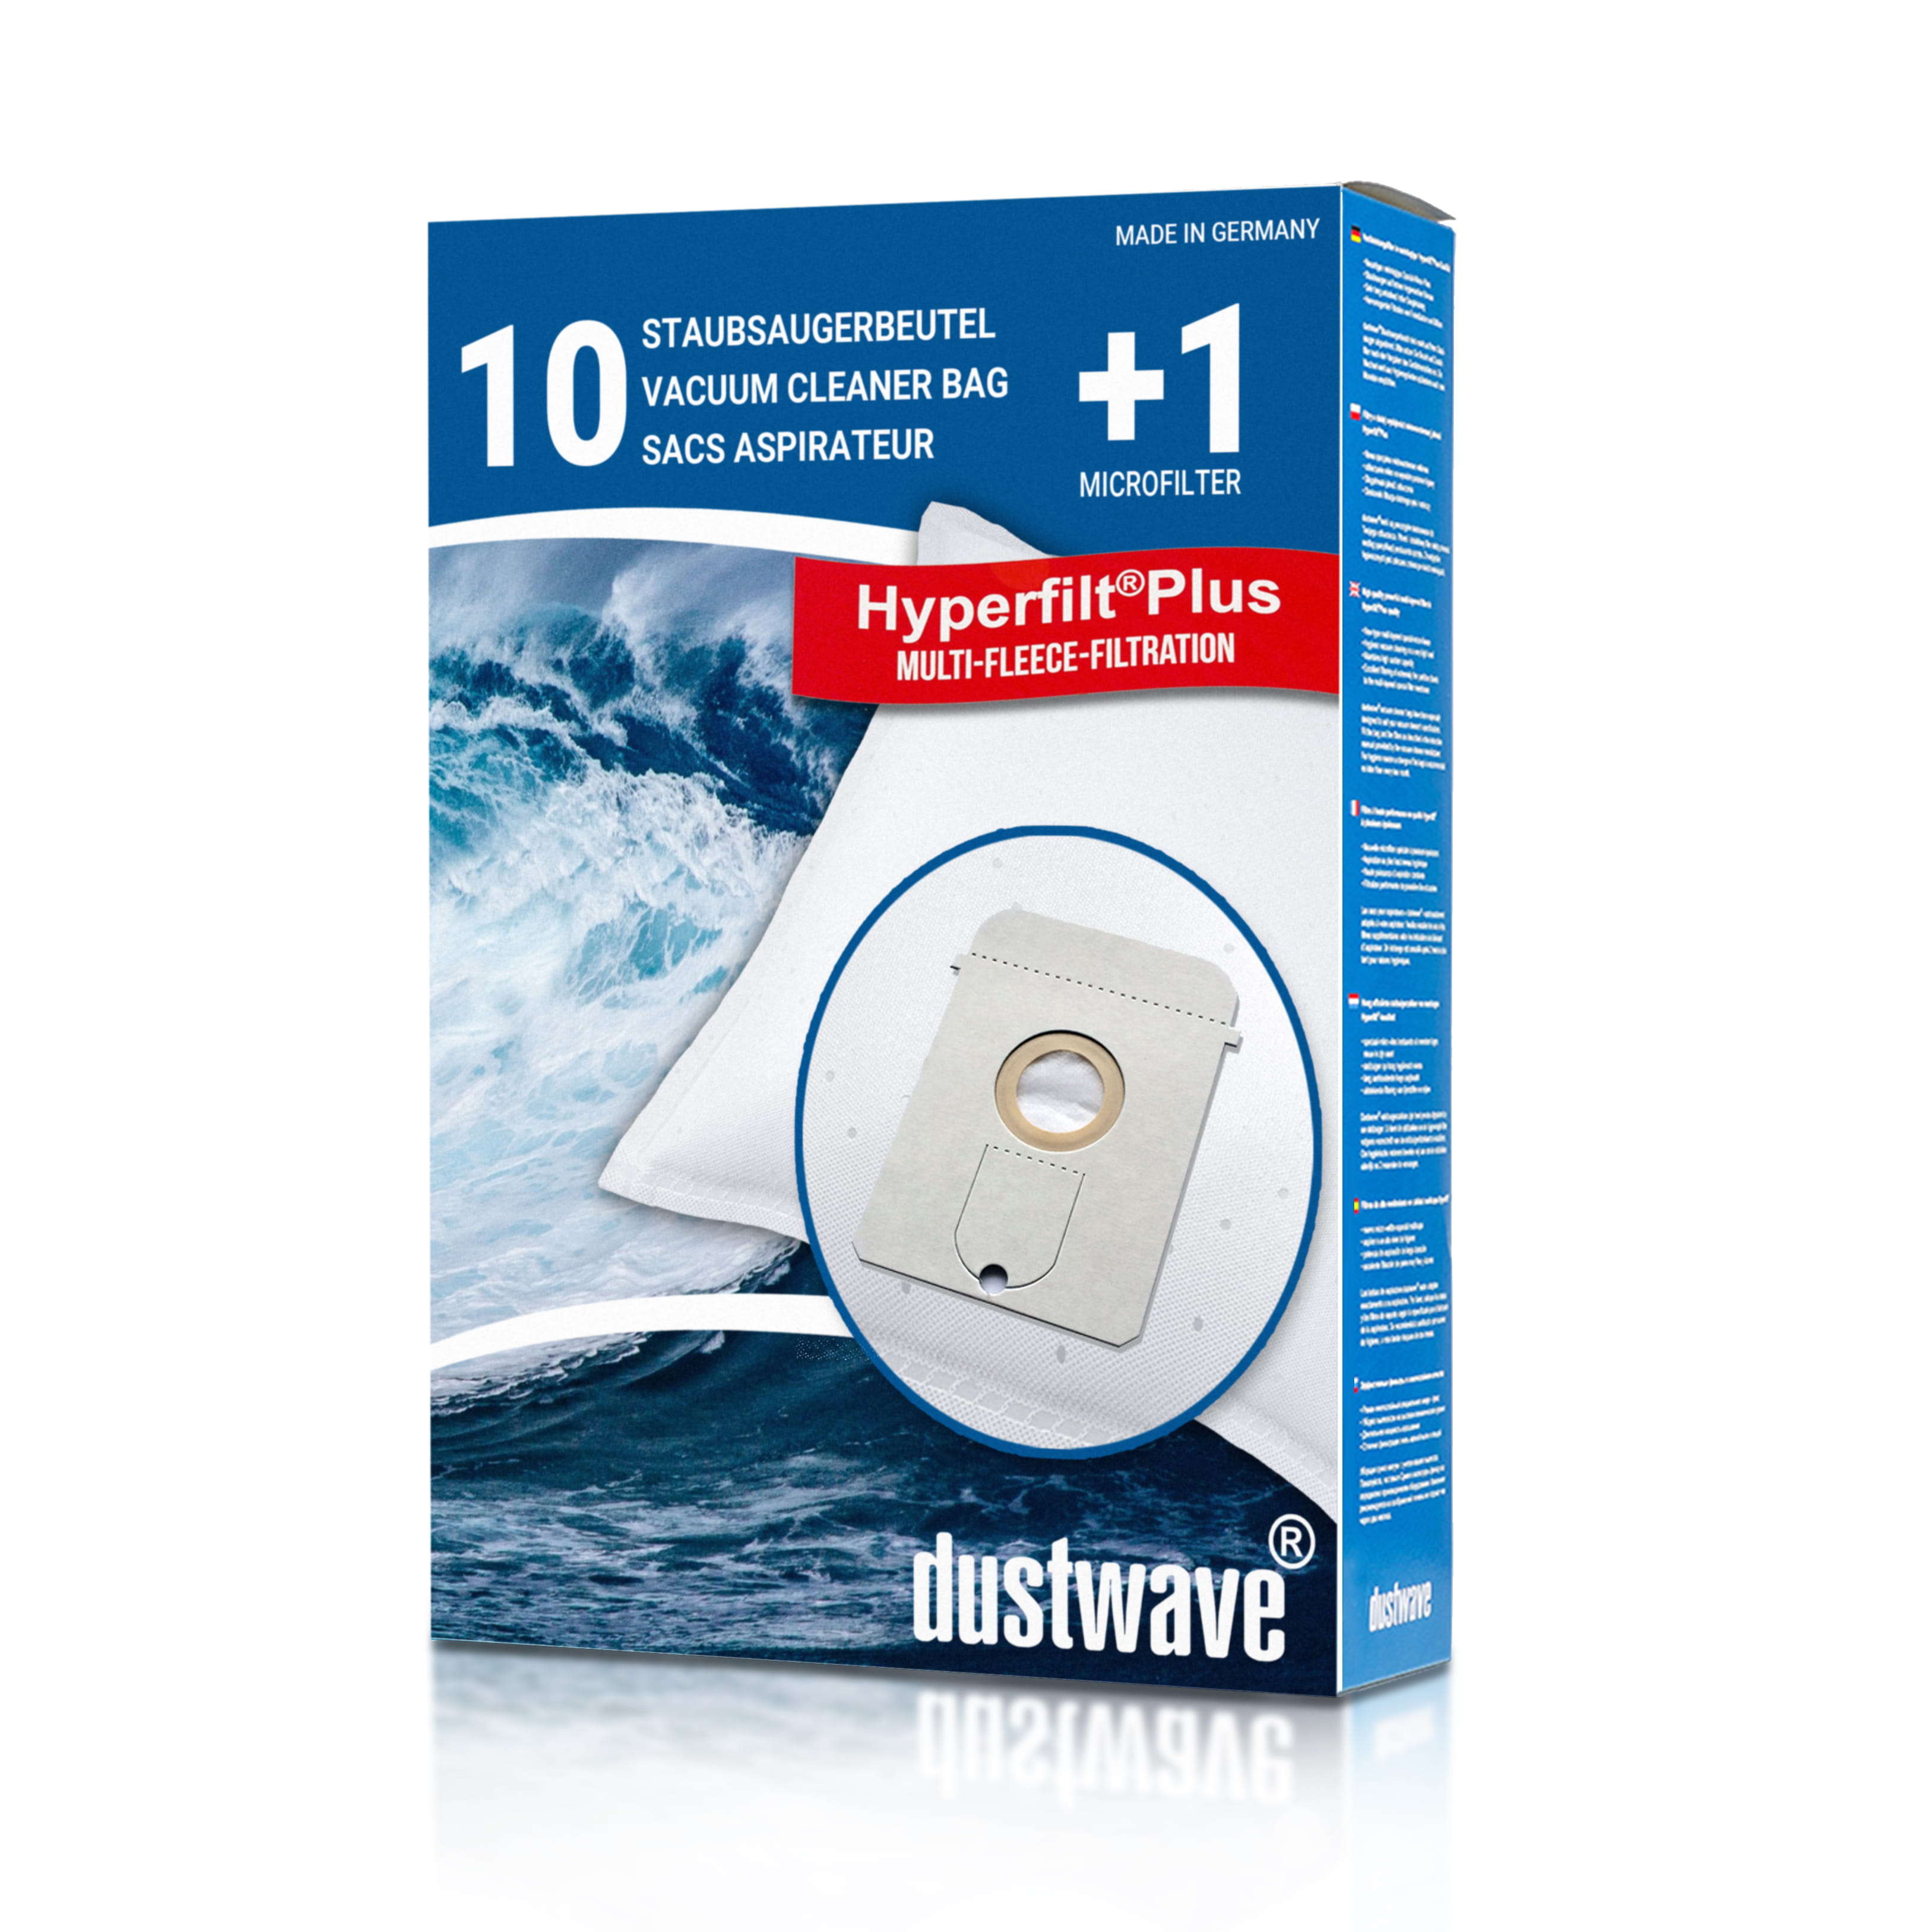 Dustwave® 10 Staubsaugerbeutel für AEG Vampyr 769 i Electronic - hocheffizient, mehrlagiges Mikrovlies mit Hygieneverschluss - Made in Germany